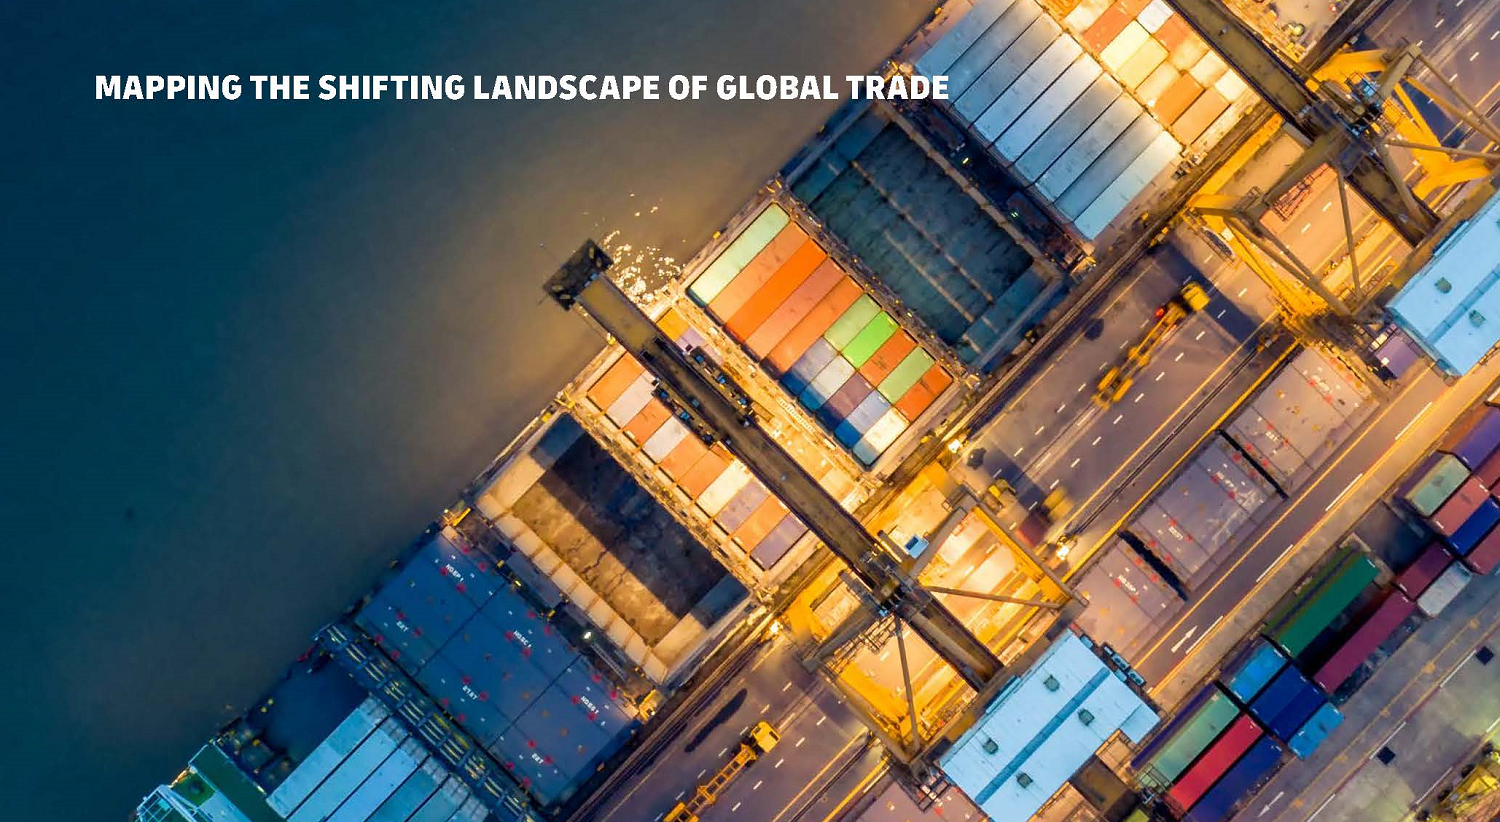 Rapporten DHL Trade Growth Atlas kartlägger de viktigaste trenderna inom global handel.